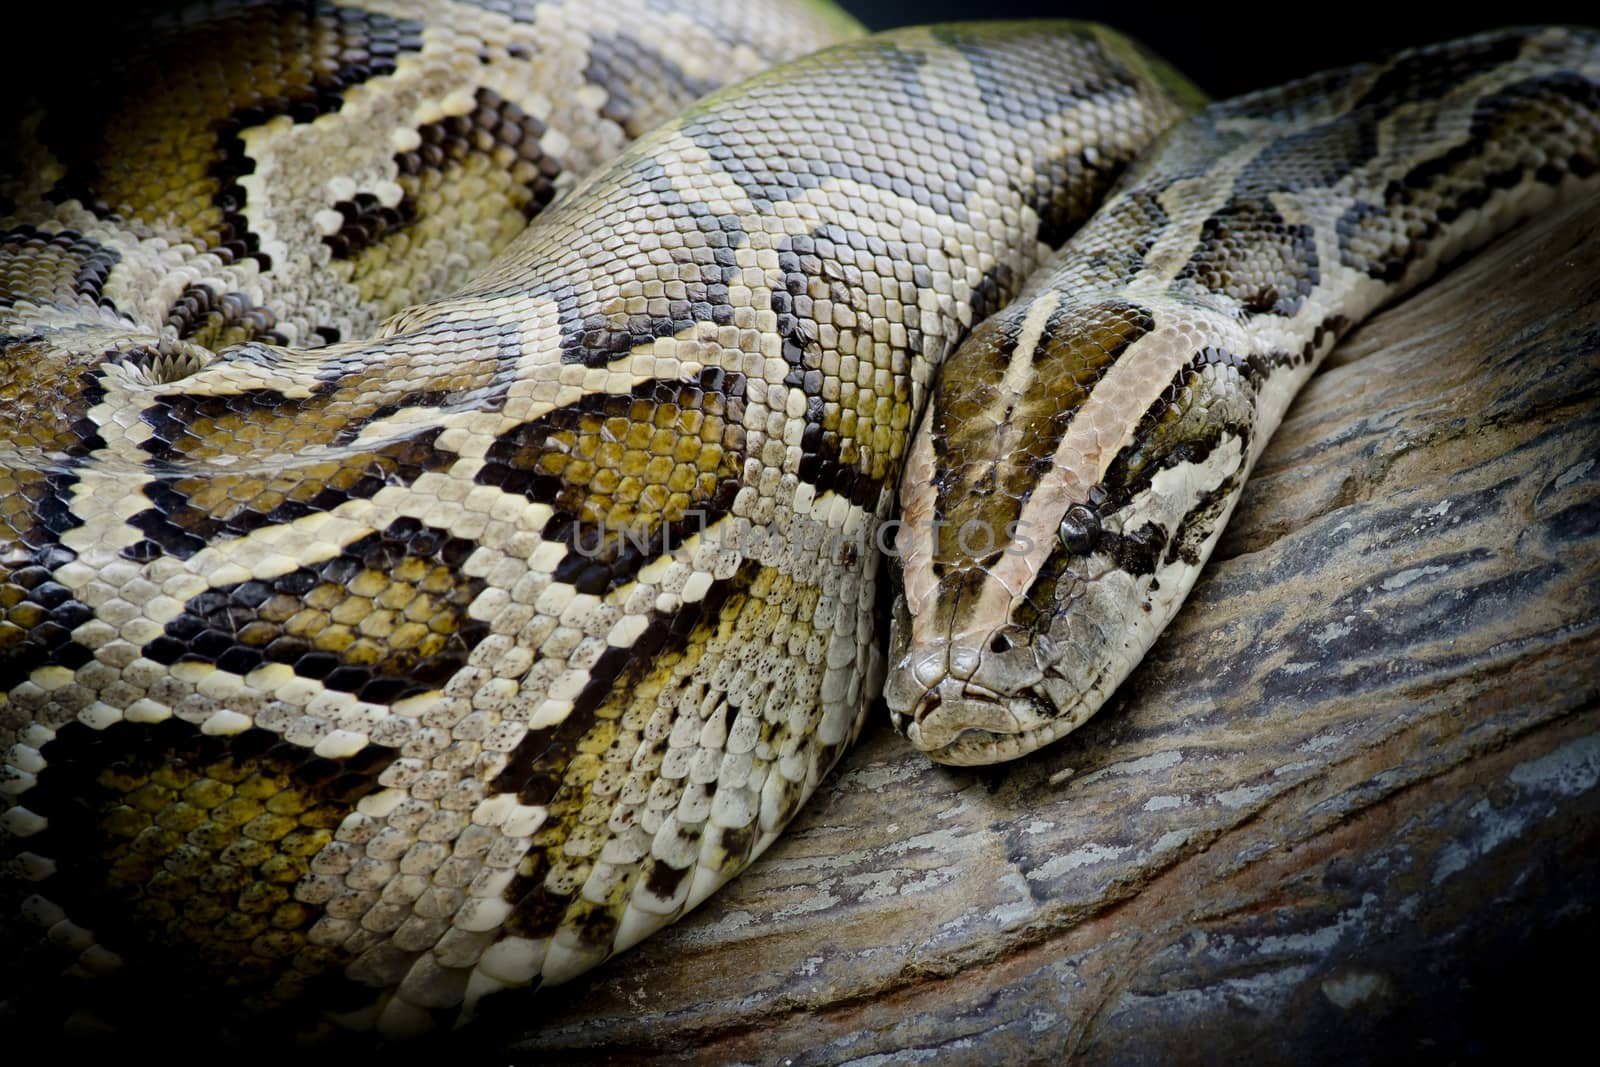 Close-up photo of burmese python (Python molurus bivittatus) isolated on black background.